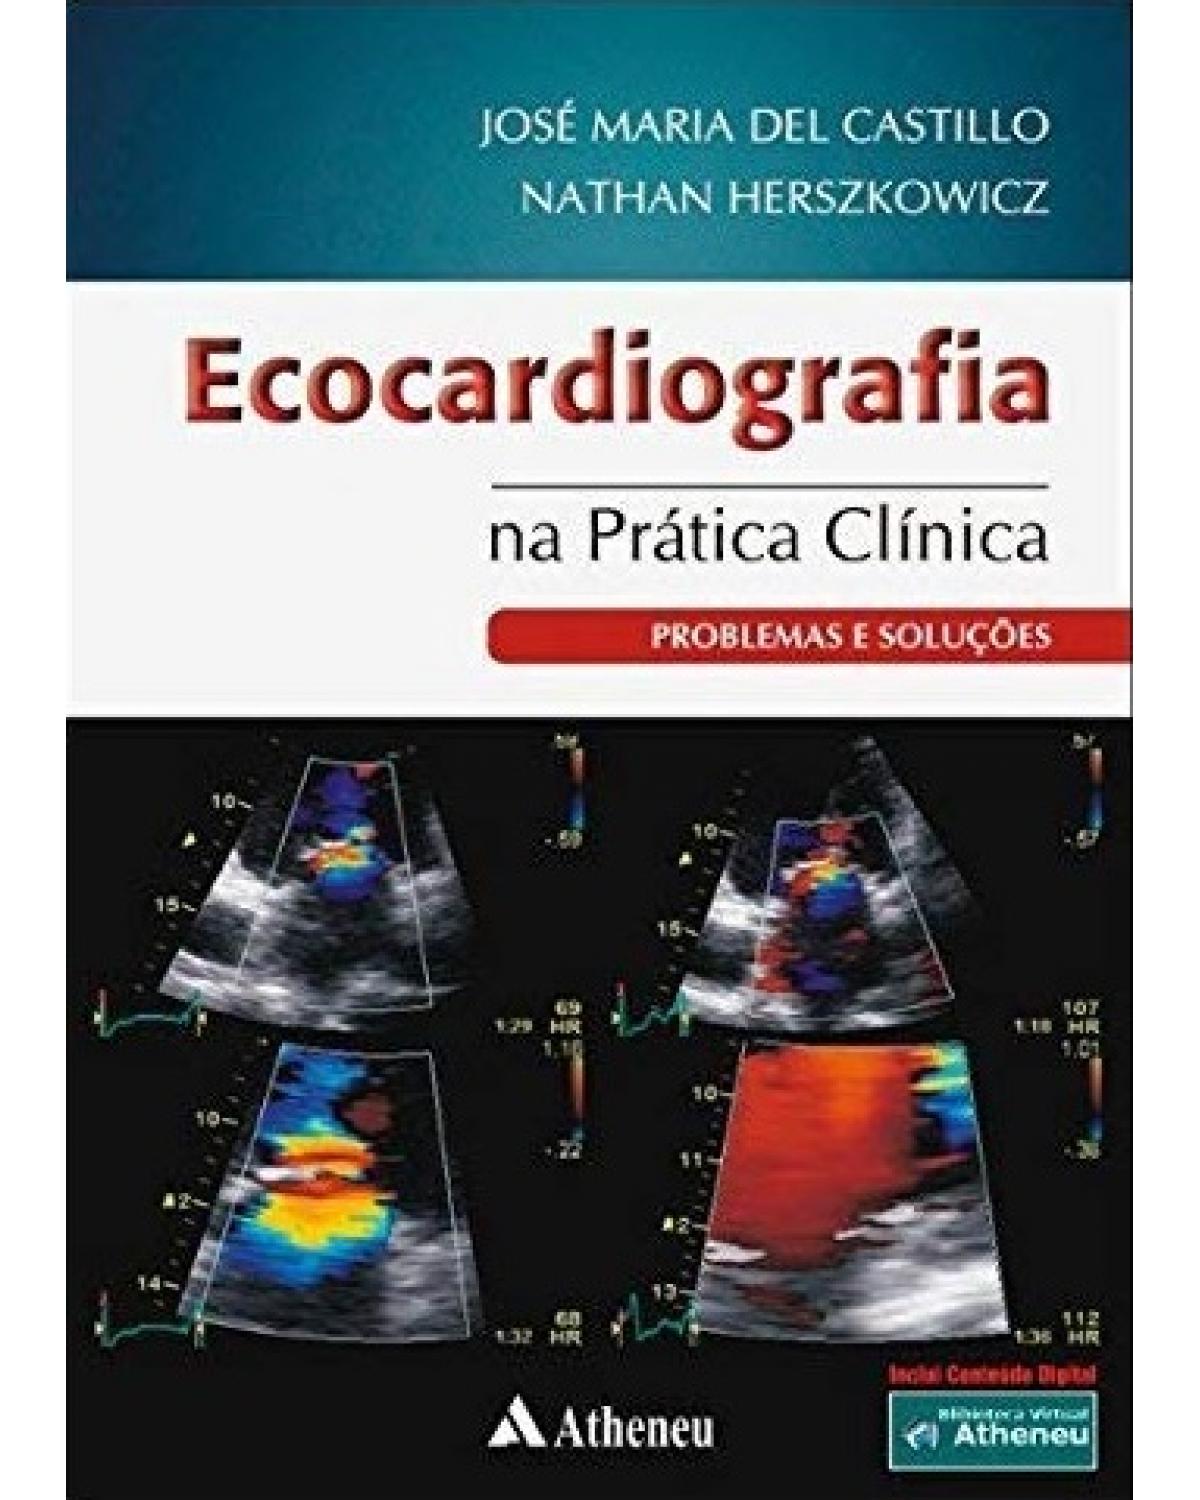 Ecocardiograma na prática clínica - problemas e soluções - 1ª Edição | 2011